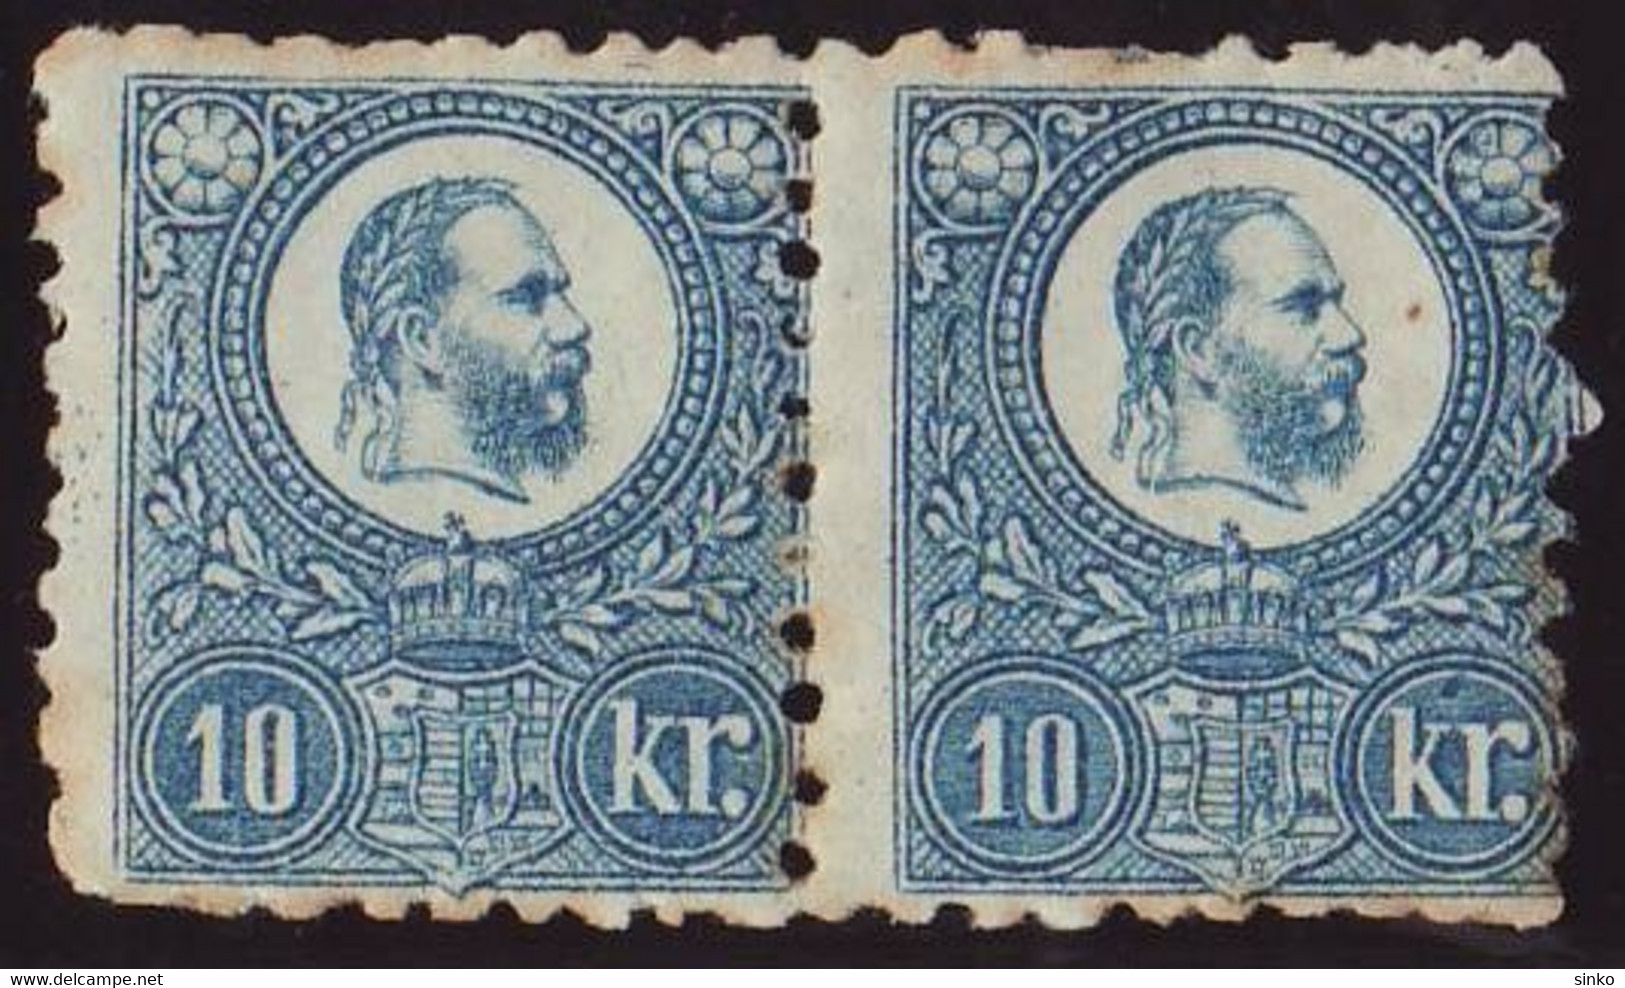 1871. Engraved 10kr Stamp Pair - Unused Stamps